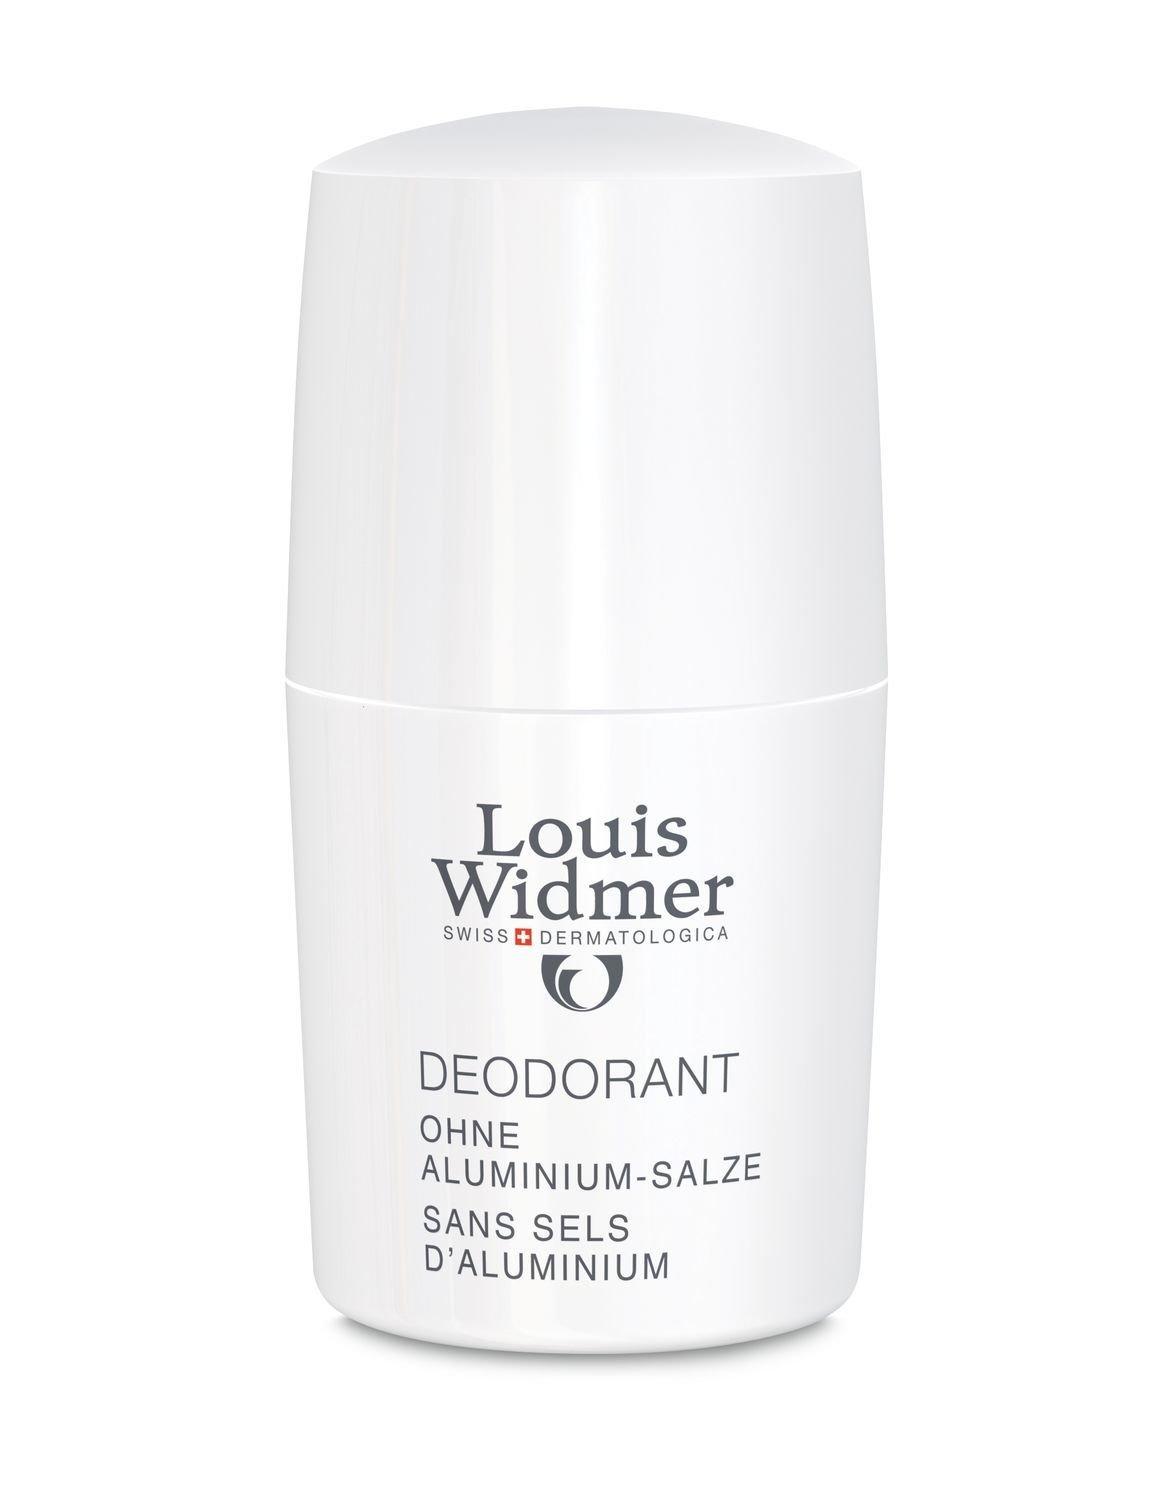 Deodorant Ohne Aluminium-salze Parfümiert Damen  50ml von Louis Widmer